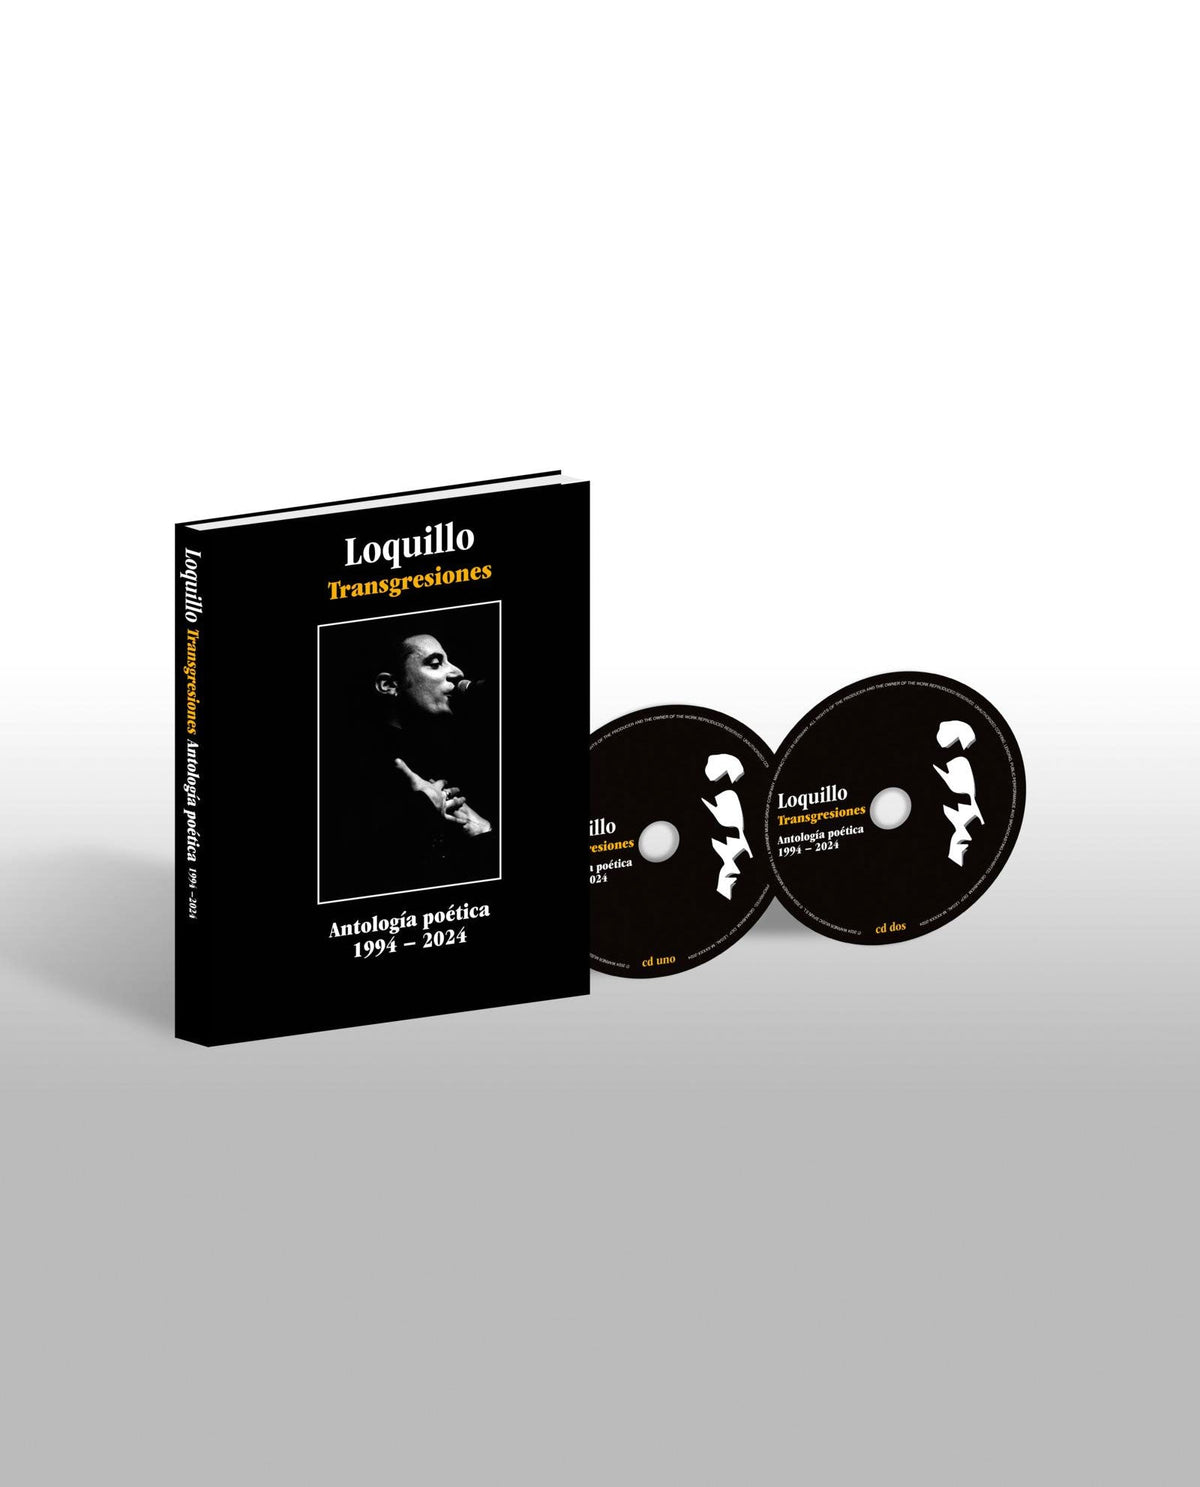 Loquillo - 2CD Libro "Transgresiones - Antología Poética" - D2fy · Rocktud - Rocktud